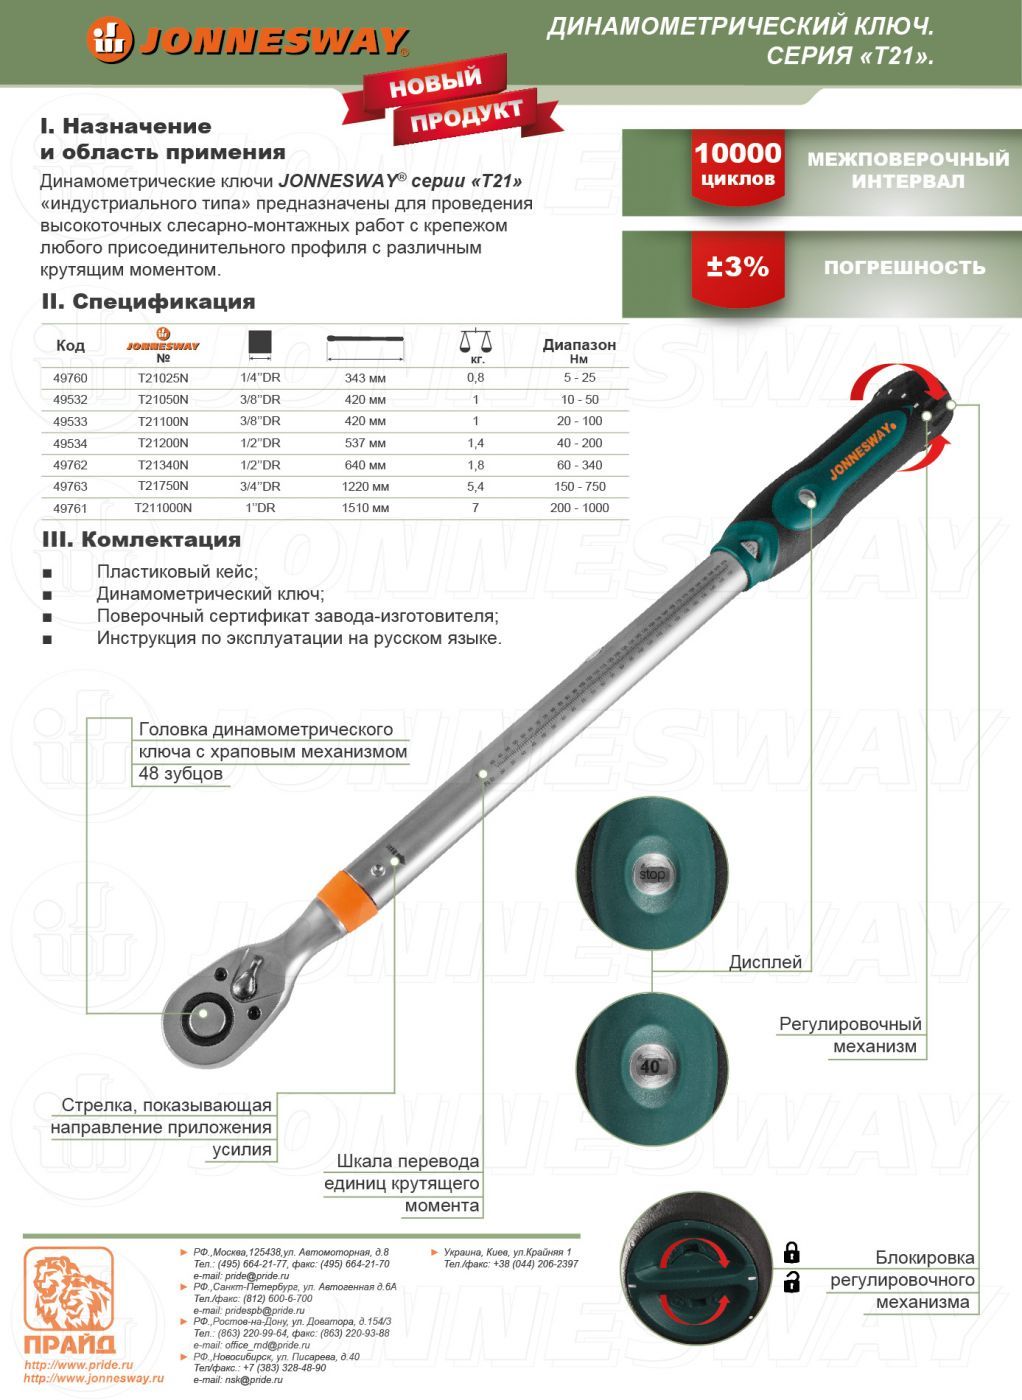 Динамометрический ключ для автомобиля как пользоваться: Динамометрические ключи. Советы по выбору и использованию